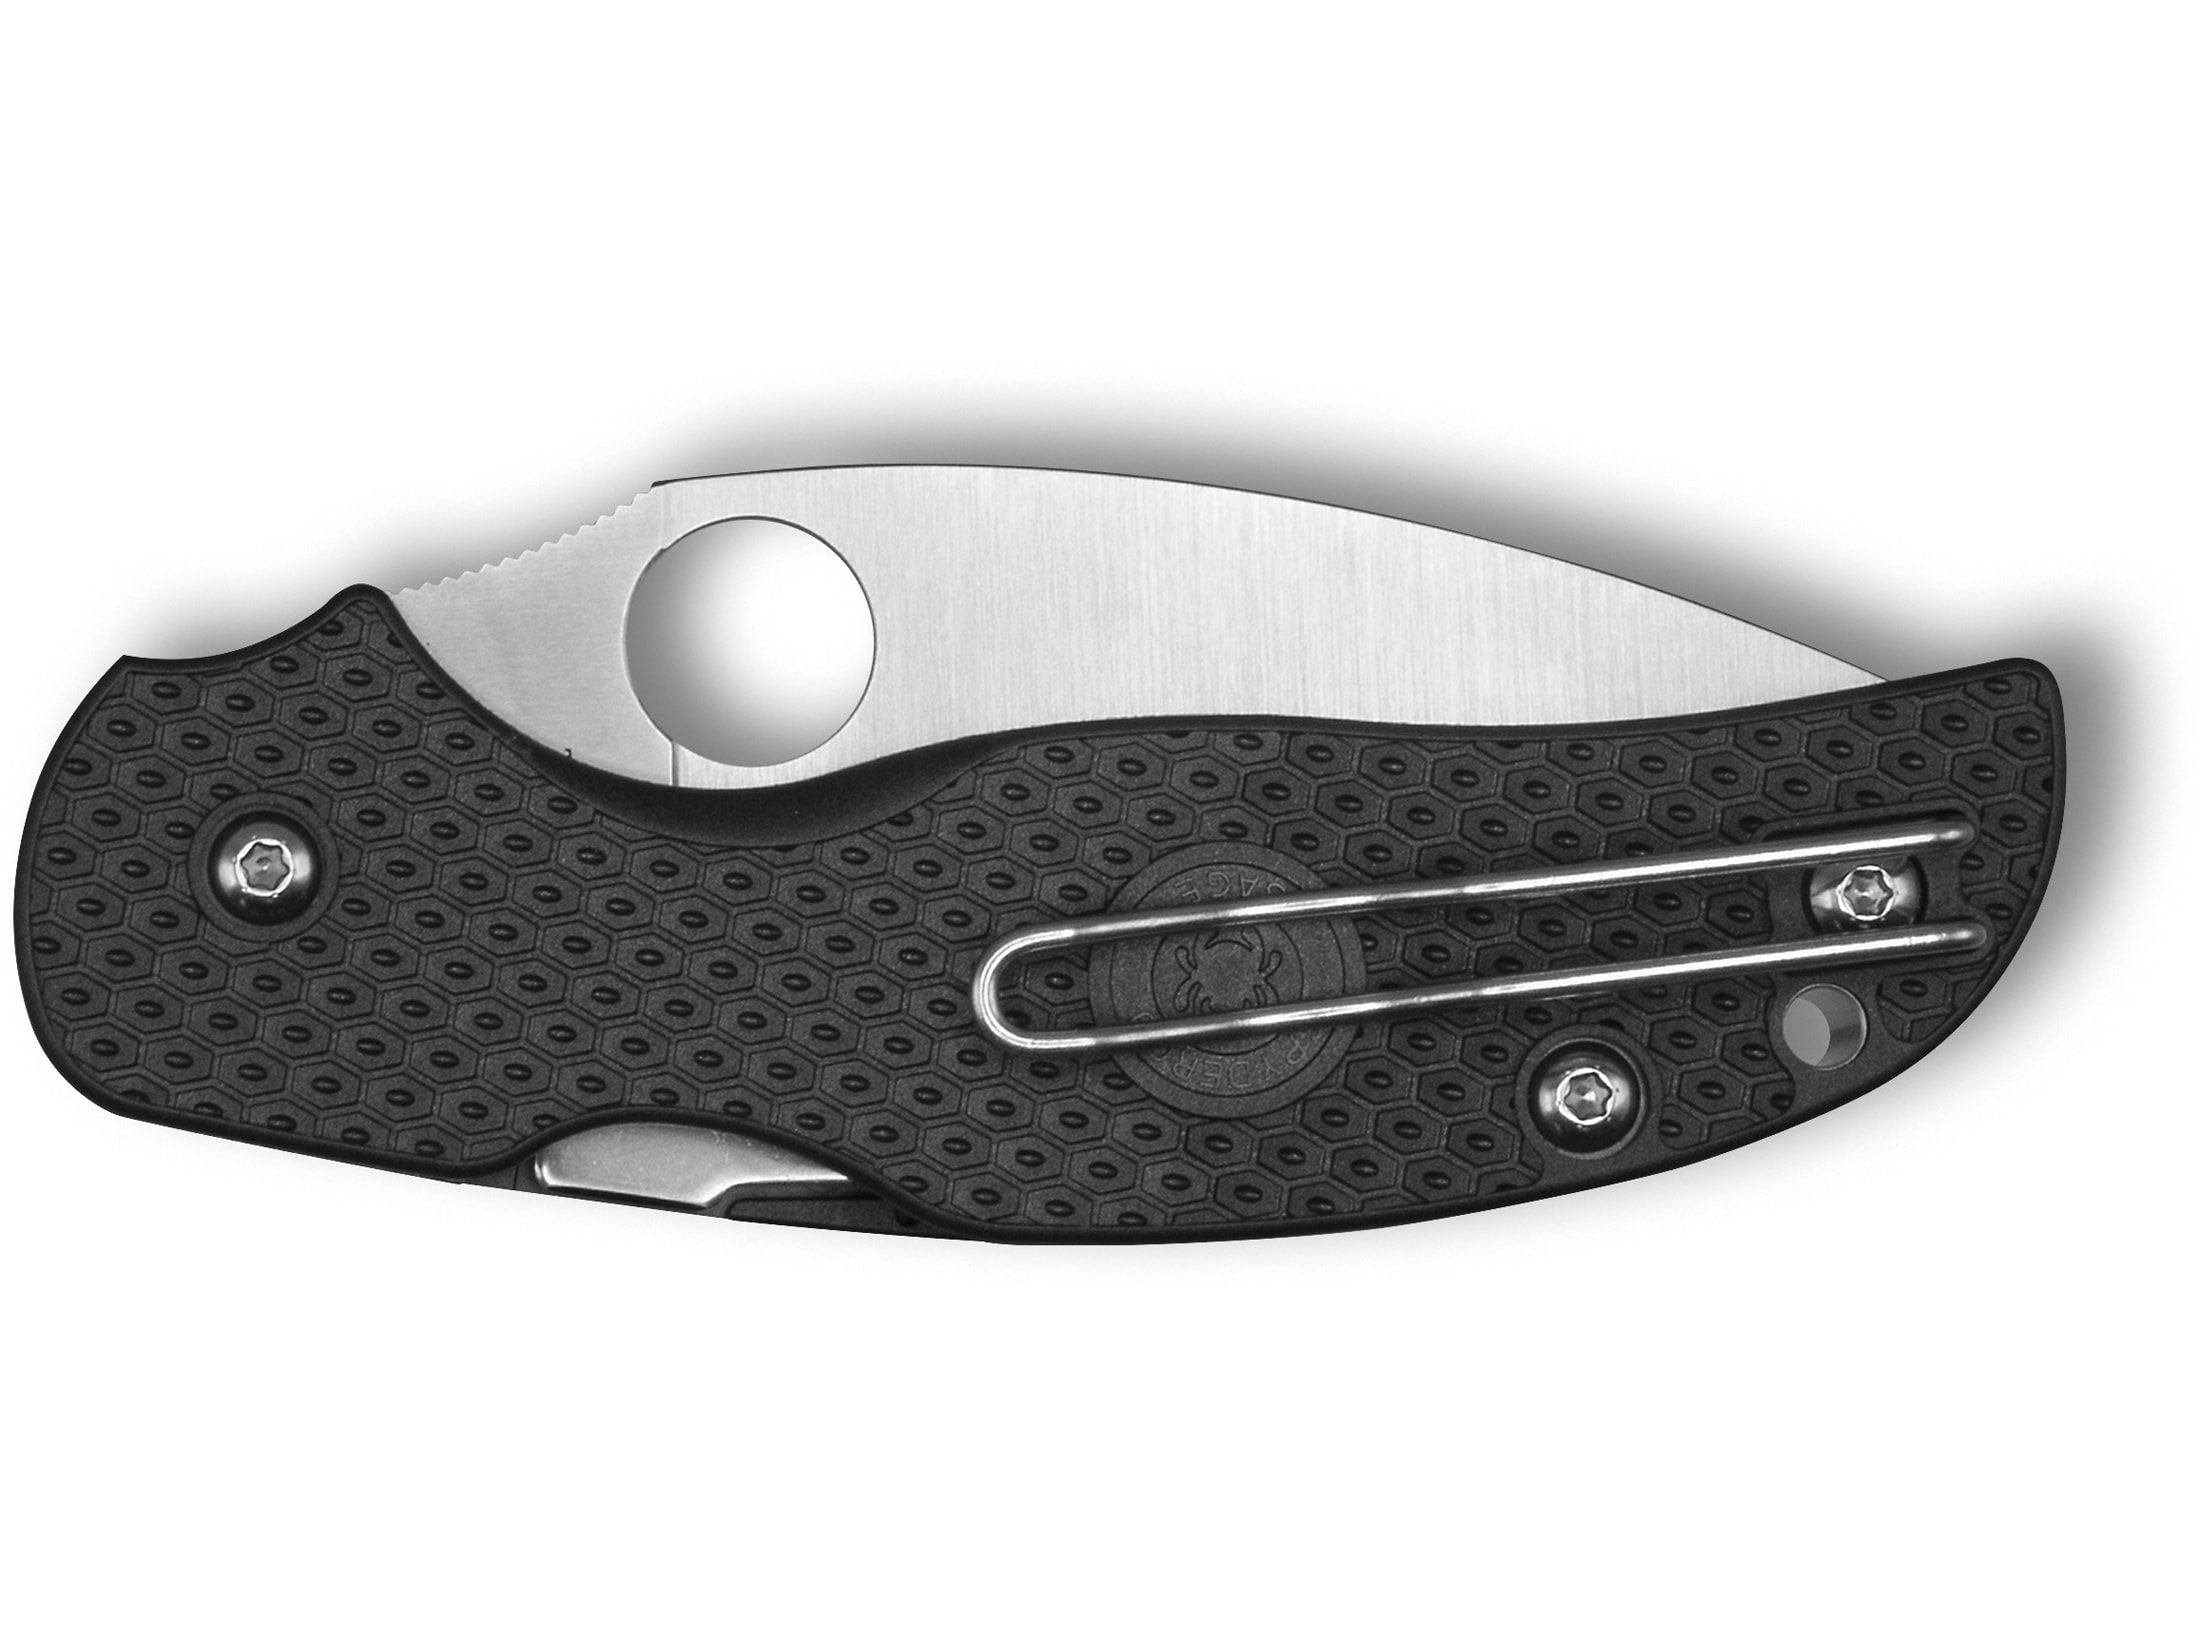 Spyderco Sage 5 Folding Knife 3″ Leaf S30V Satin Blade Fiberglass Reinforced Nylon (FRN) Handle Black For Sale